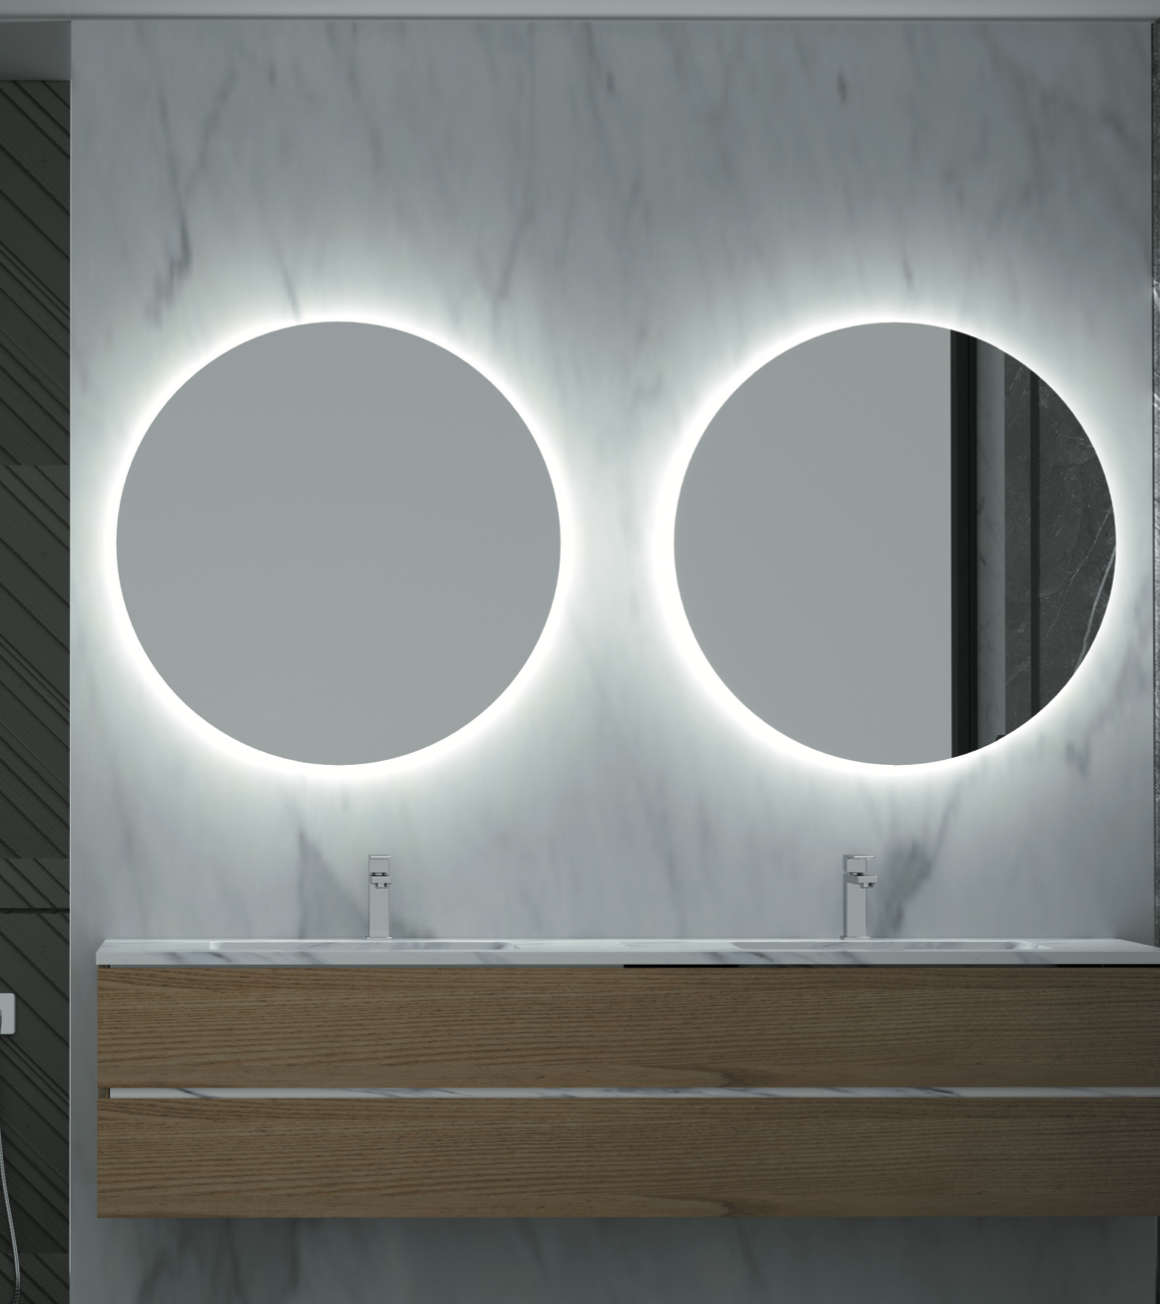 LED Oporto backlit round bathroom mirror by Ledimex